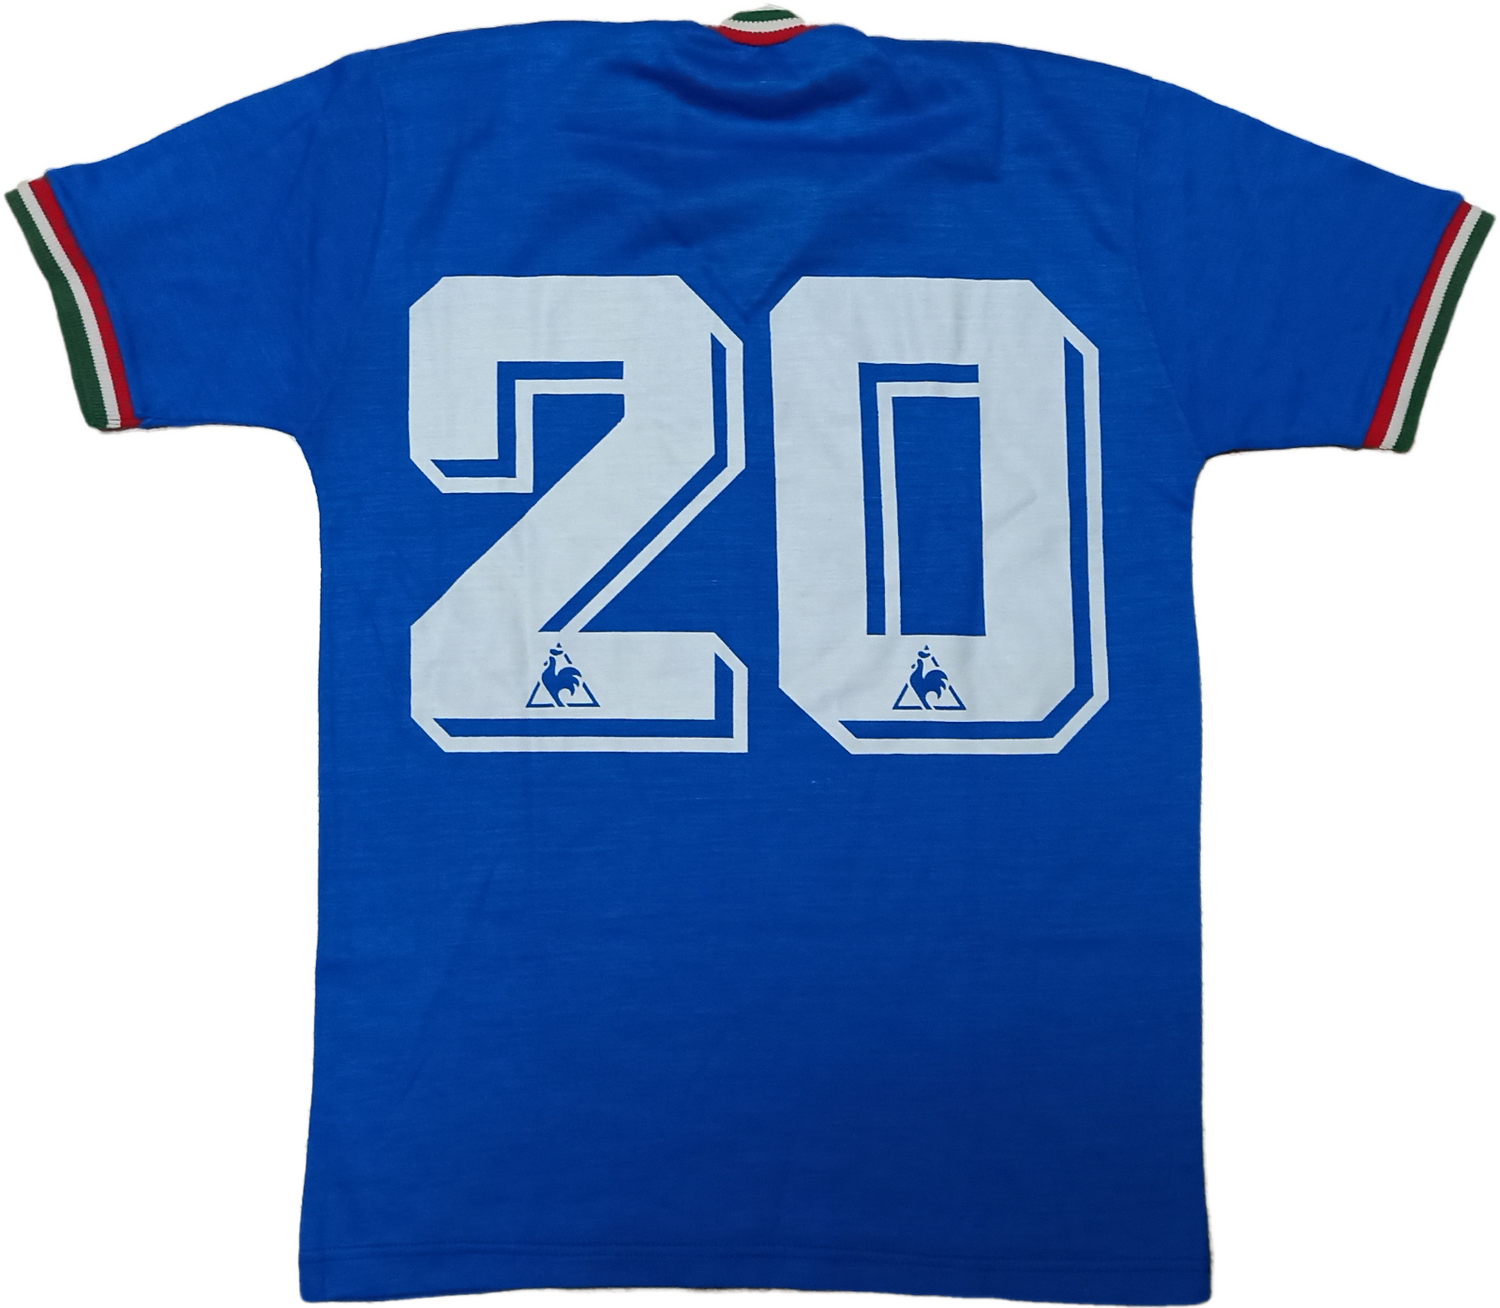 Camiseta Italia Paolo Rossi mundial 1982 jersey maglia (DHL delivery)